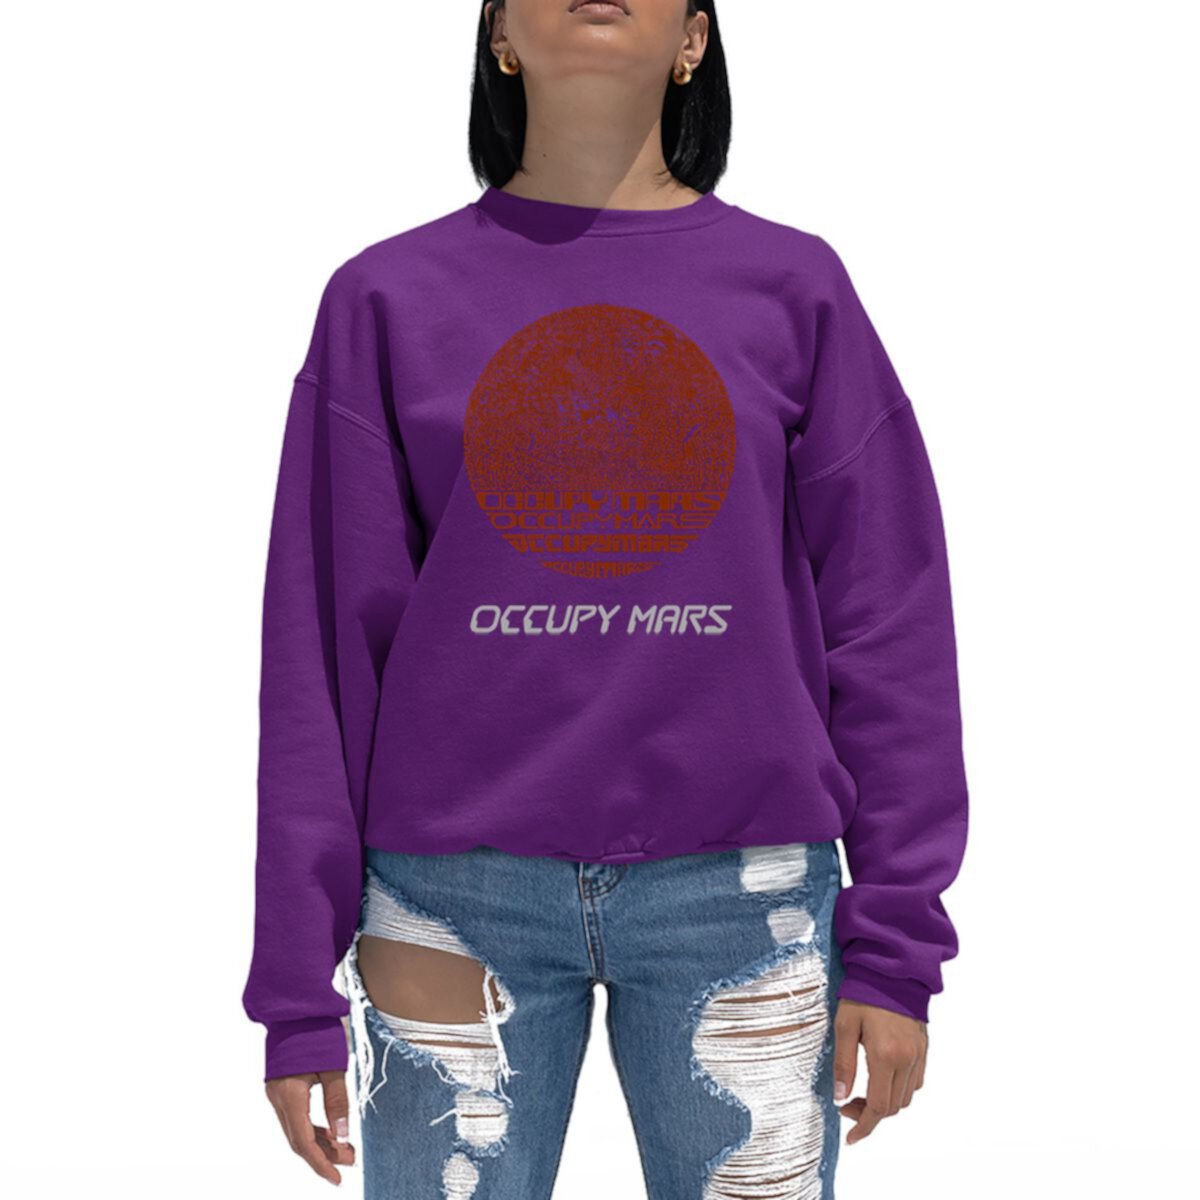 Occupy Mars - Women's Word Art Crewneck Sweatshirt LA Pop Art